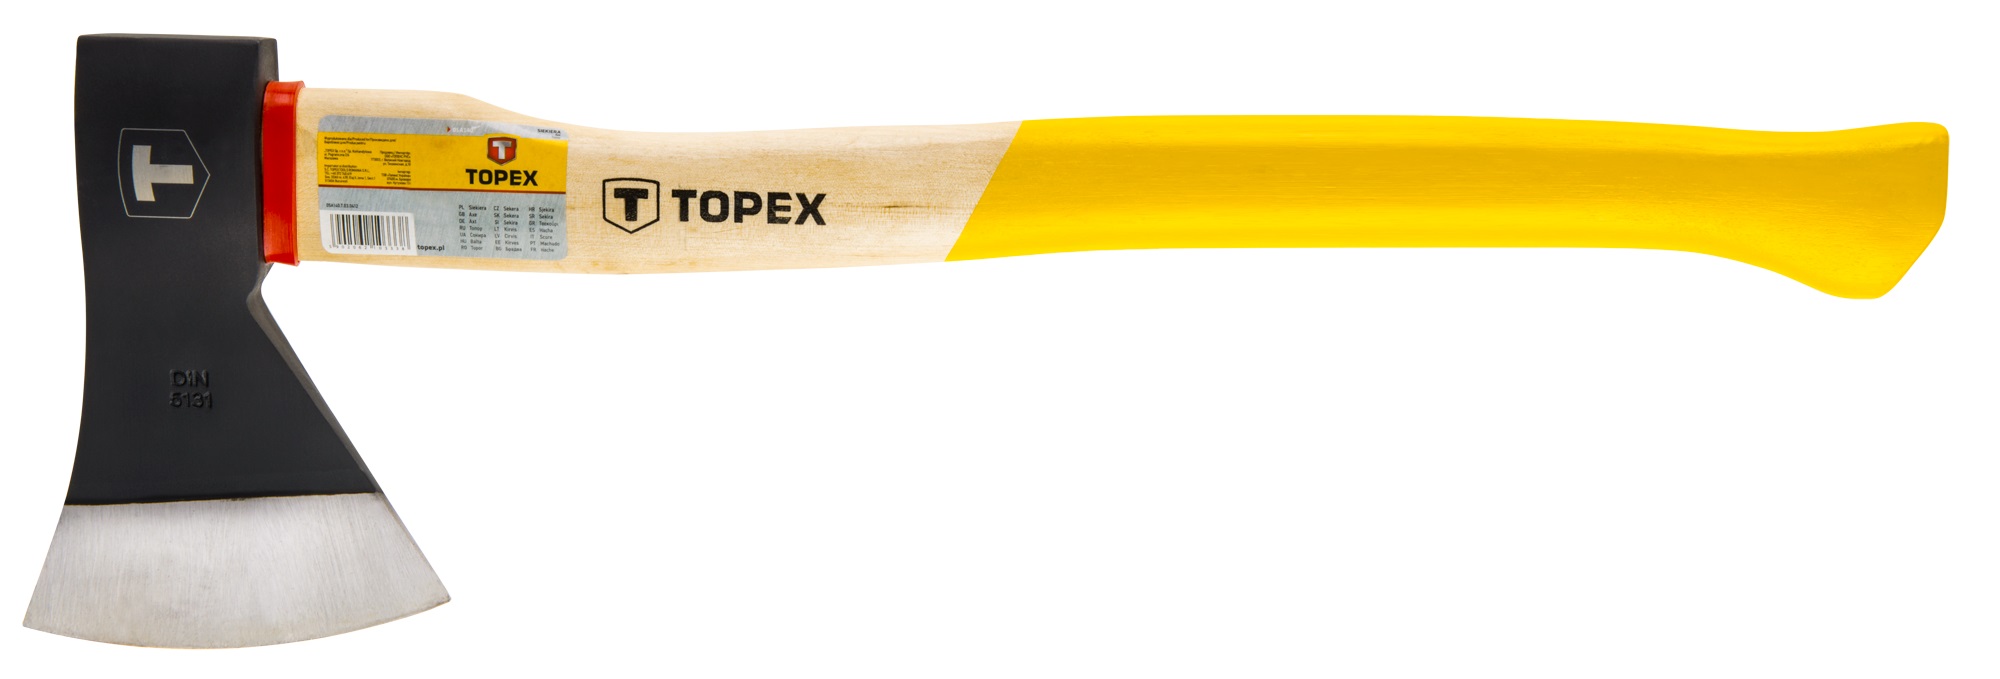 Topex 05A146